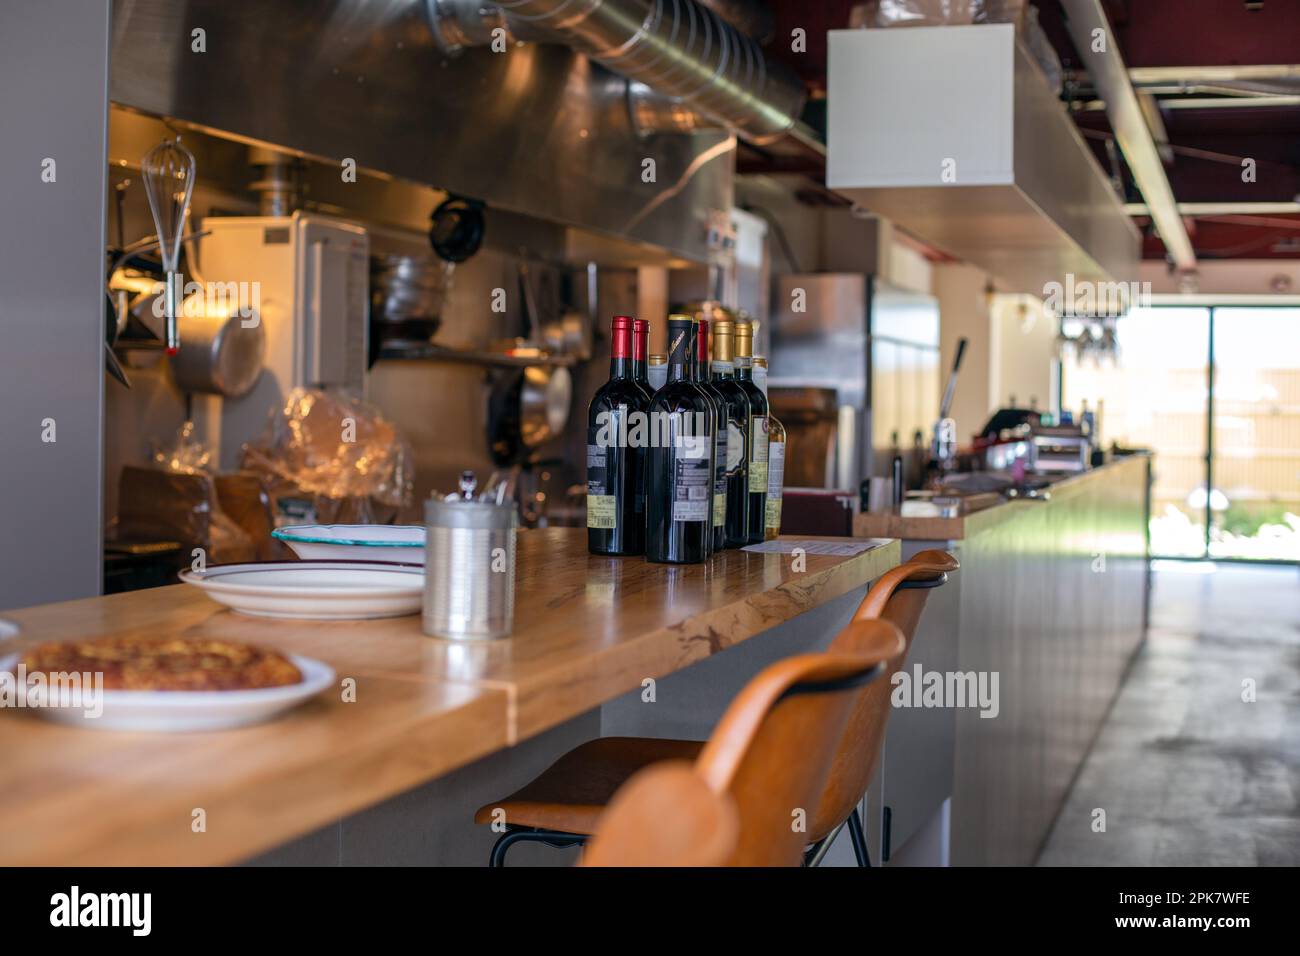 Eine Restaurantküche und eine Theke, Flaschen Rotwein. Stockfoto